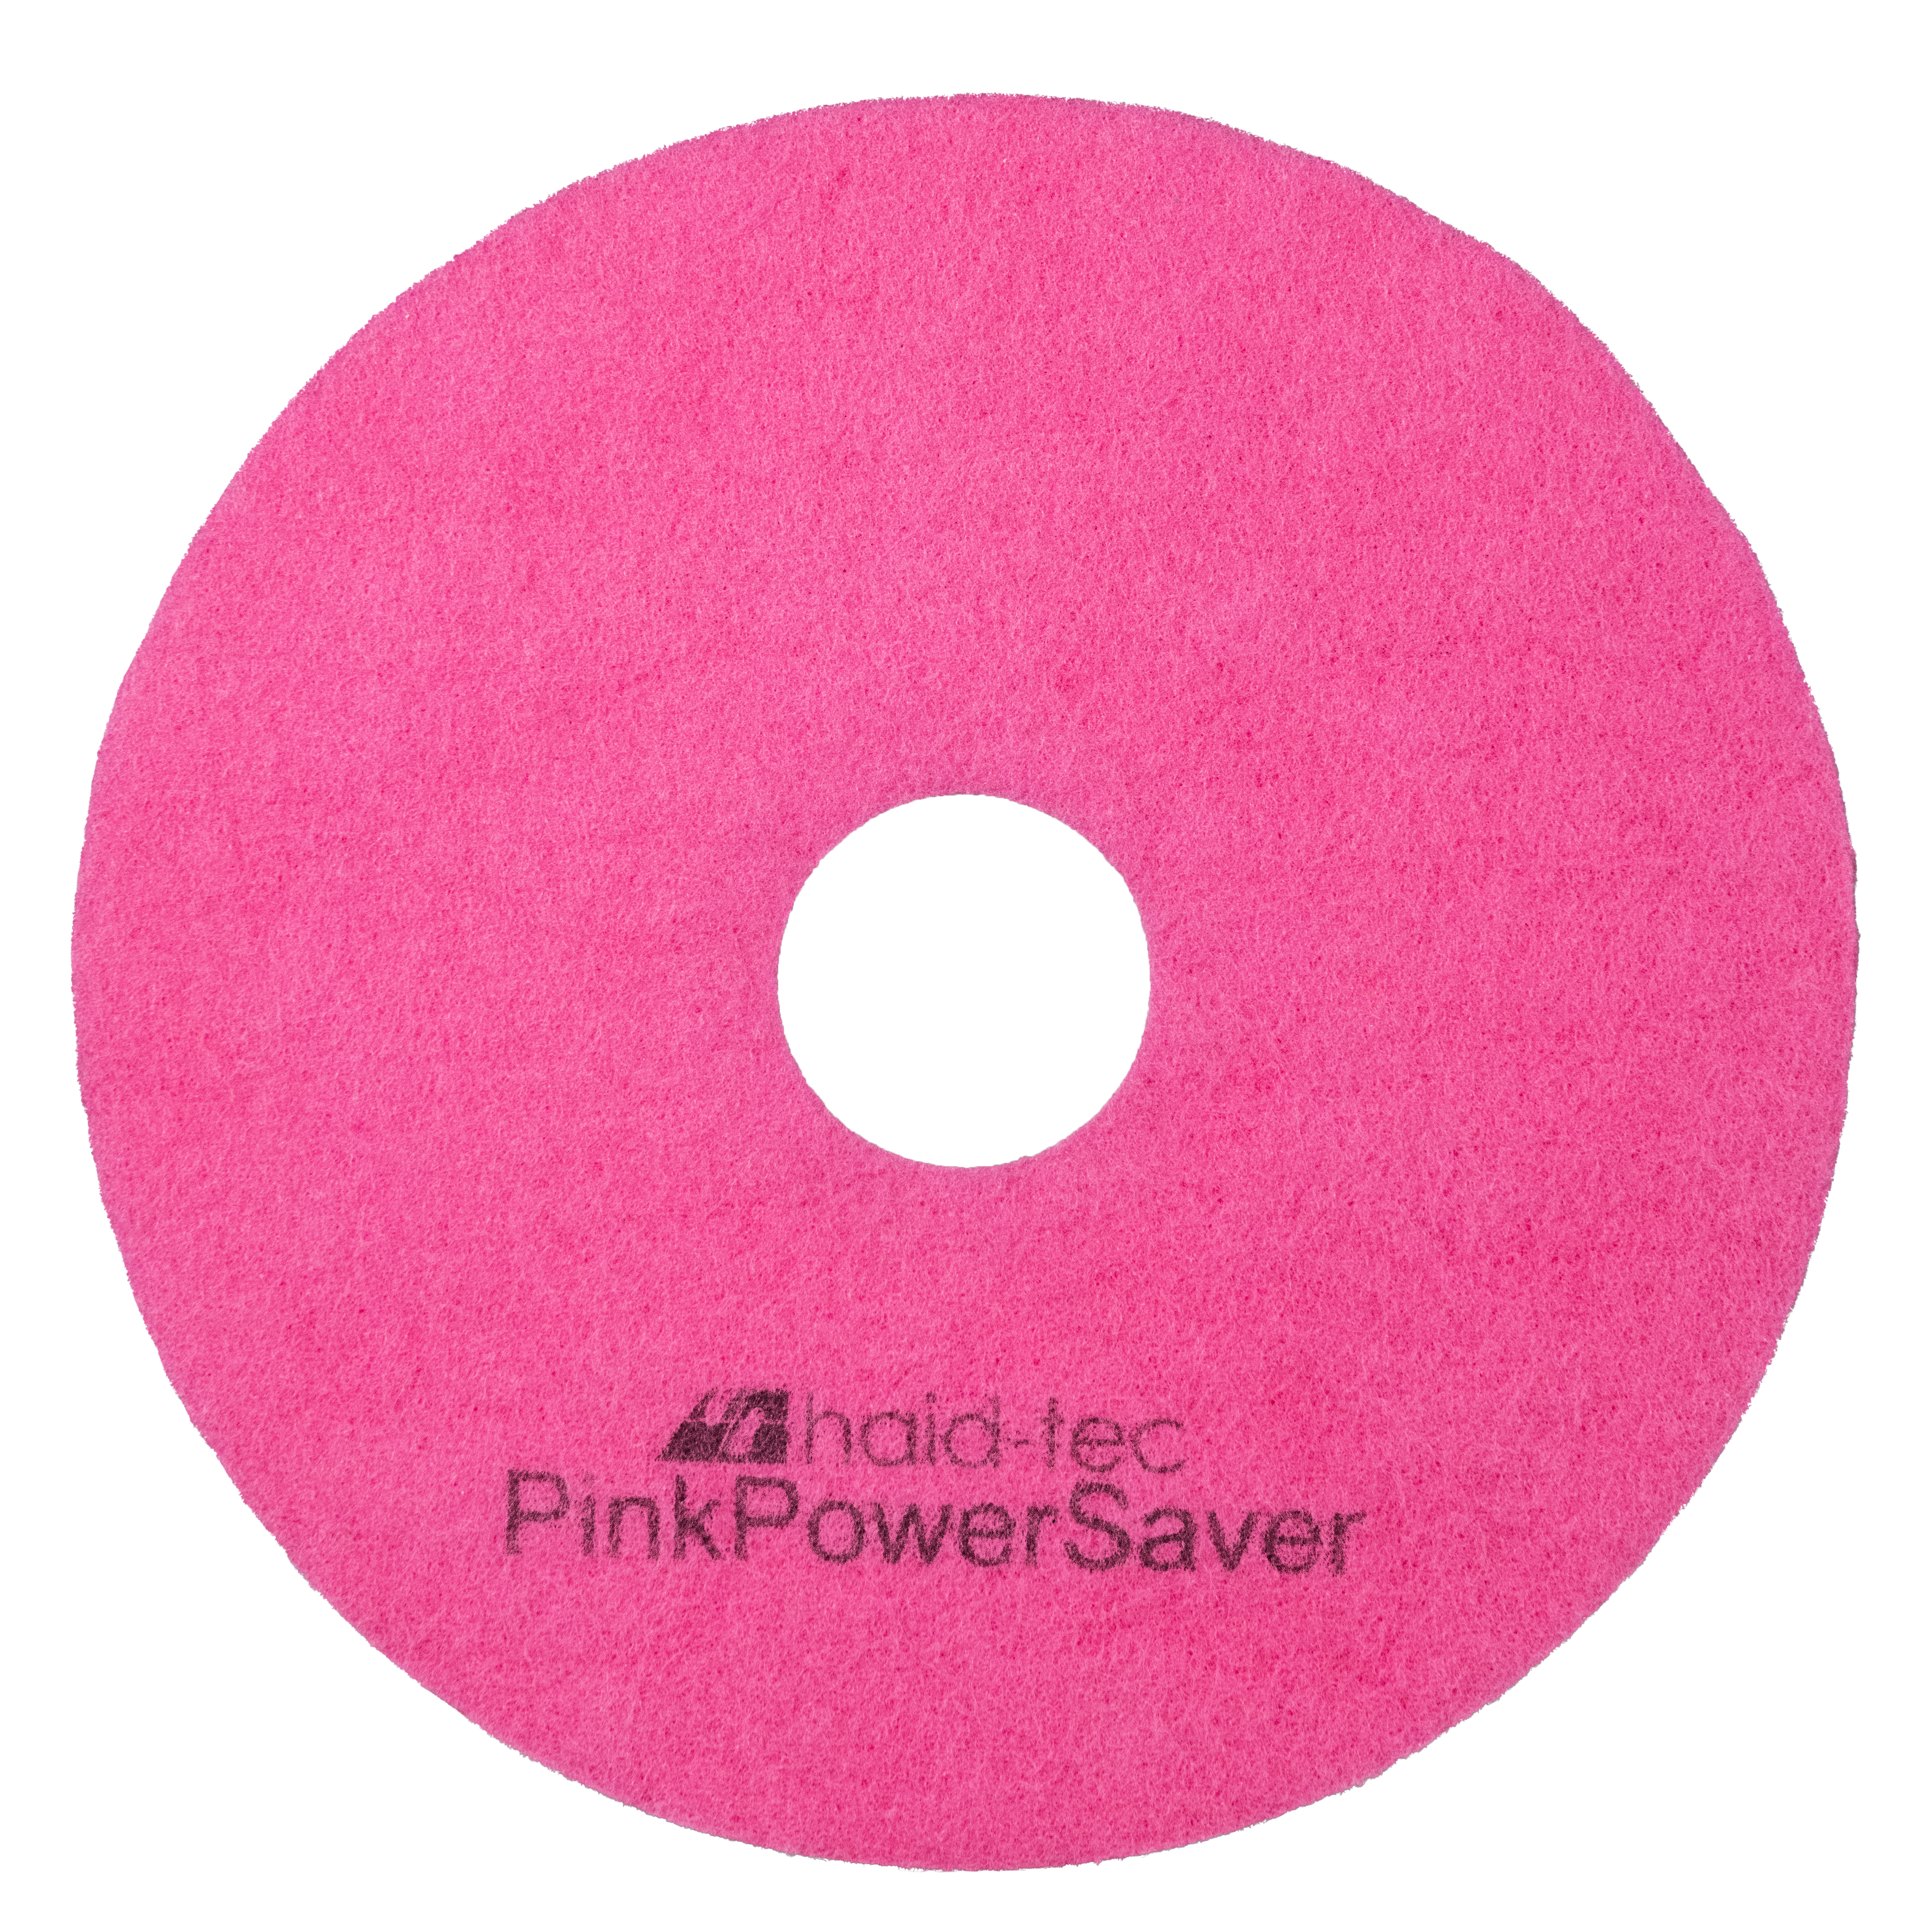 PinkPowerSaver Pad 10Zoll/254mm für i-mop XXL, Pad für Kompakt-Scheuersaugmaschine - Melaminpad für die Intensiv- und Unterhaltsreinigung